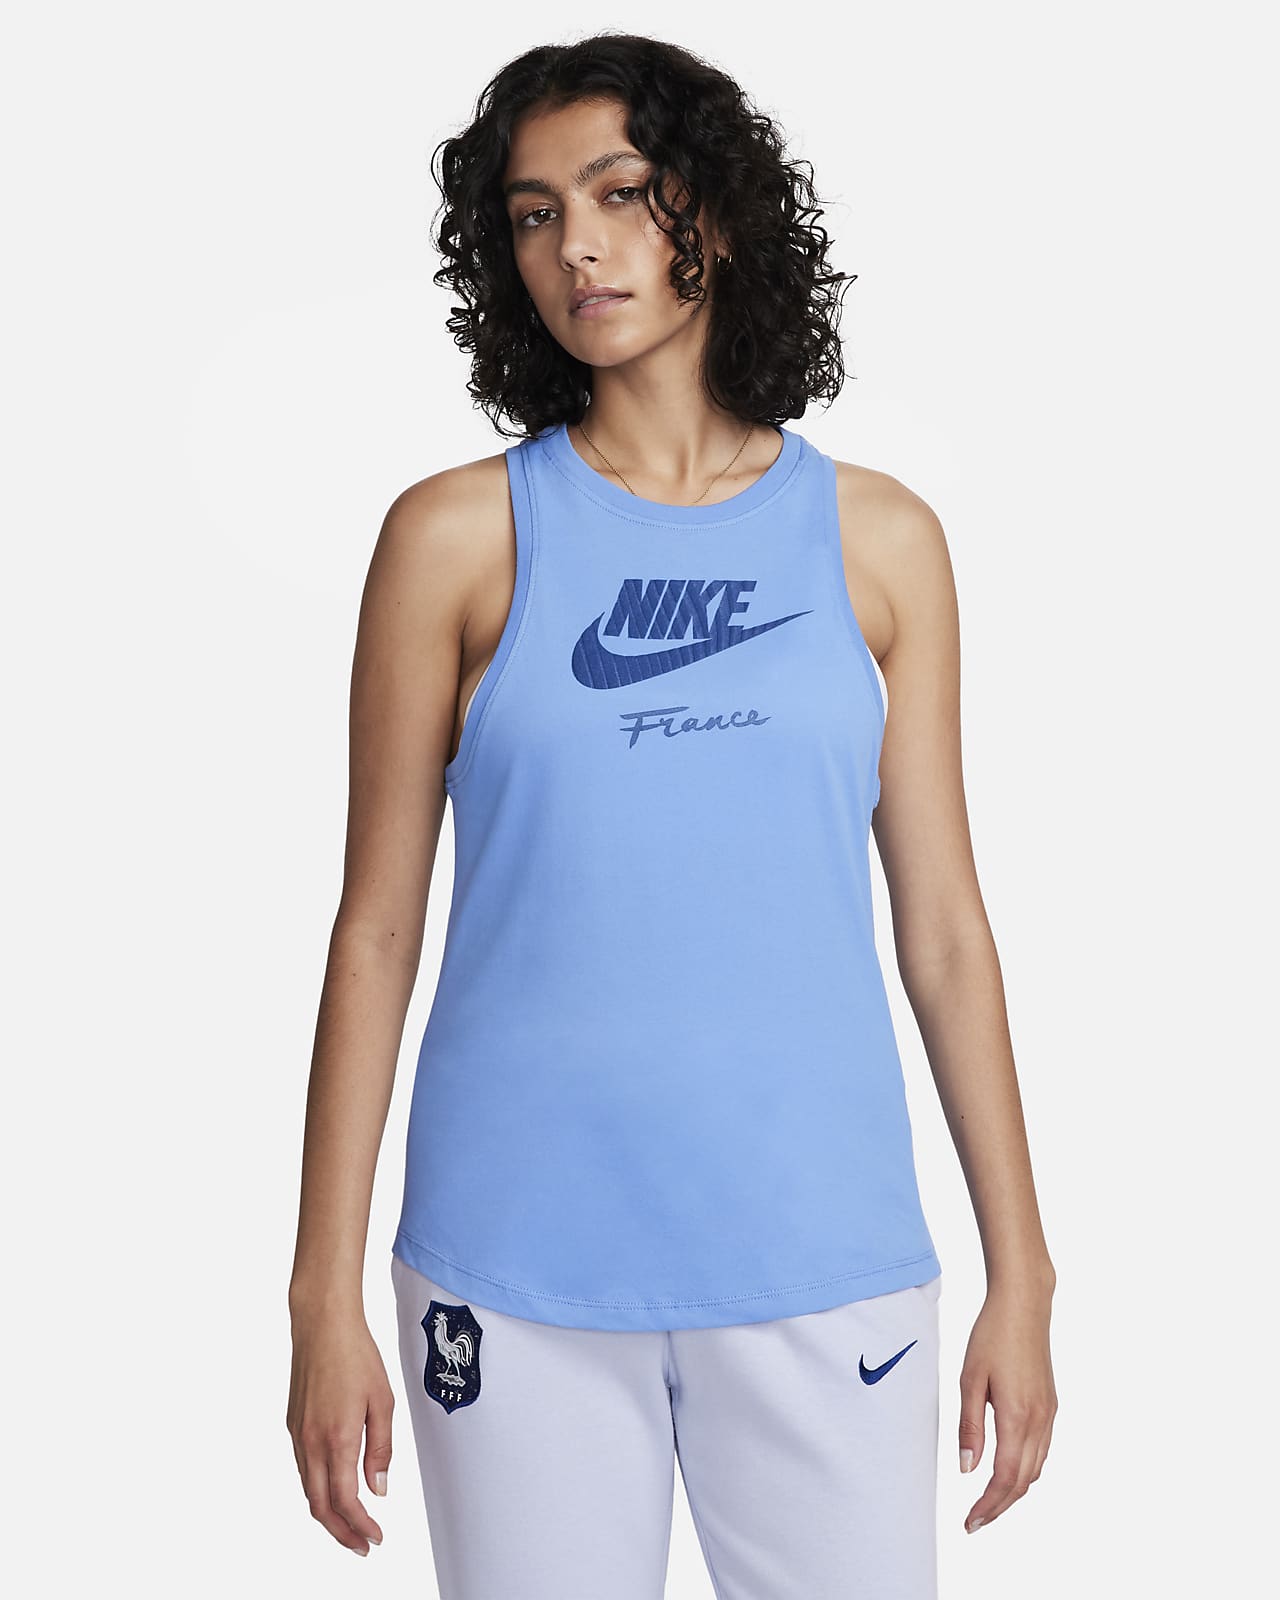 FFF Women's Nike Tank Top.